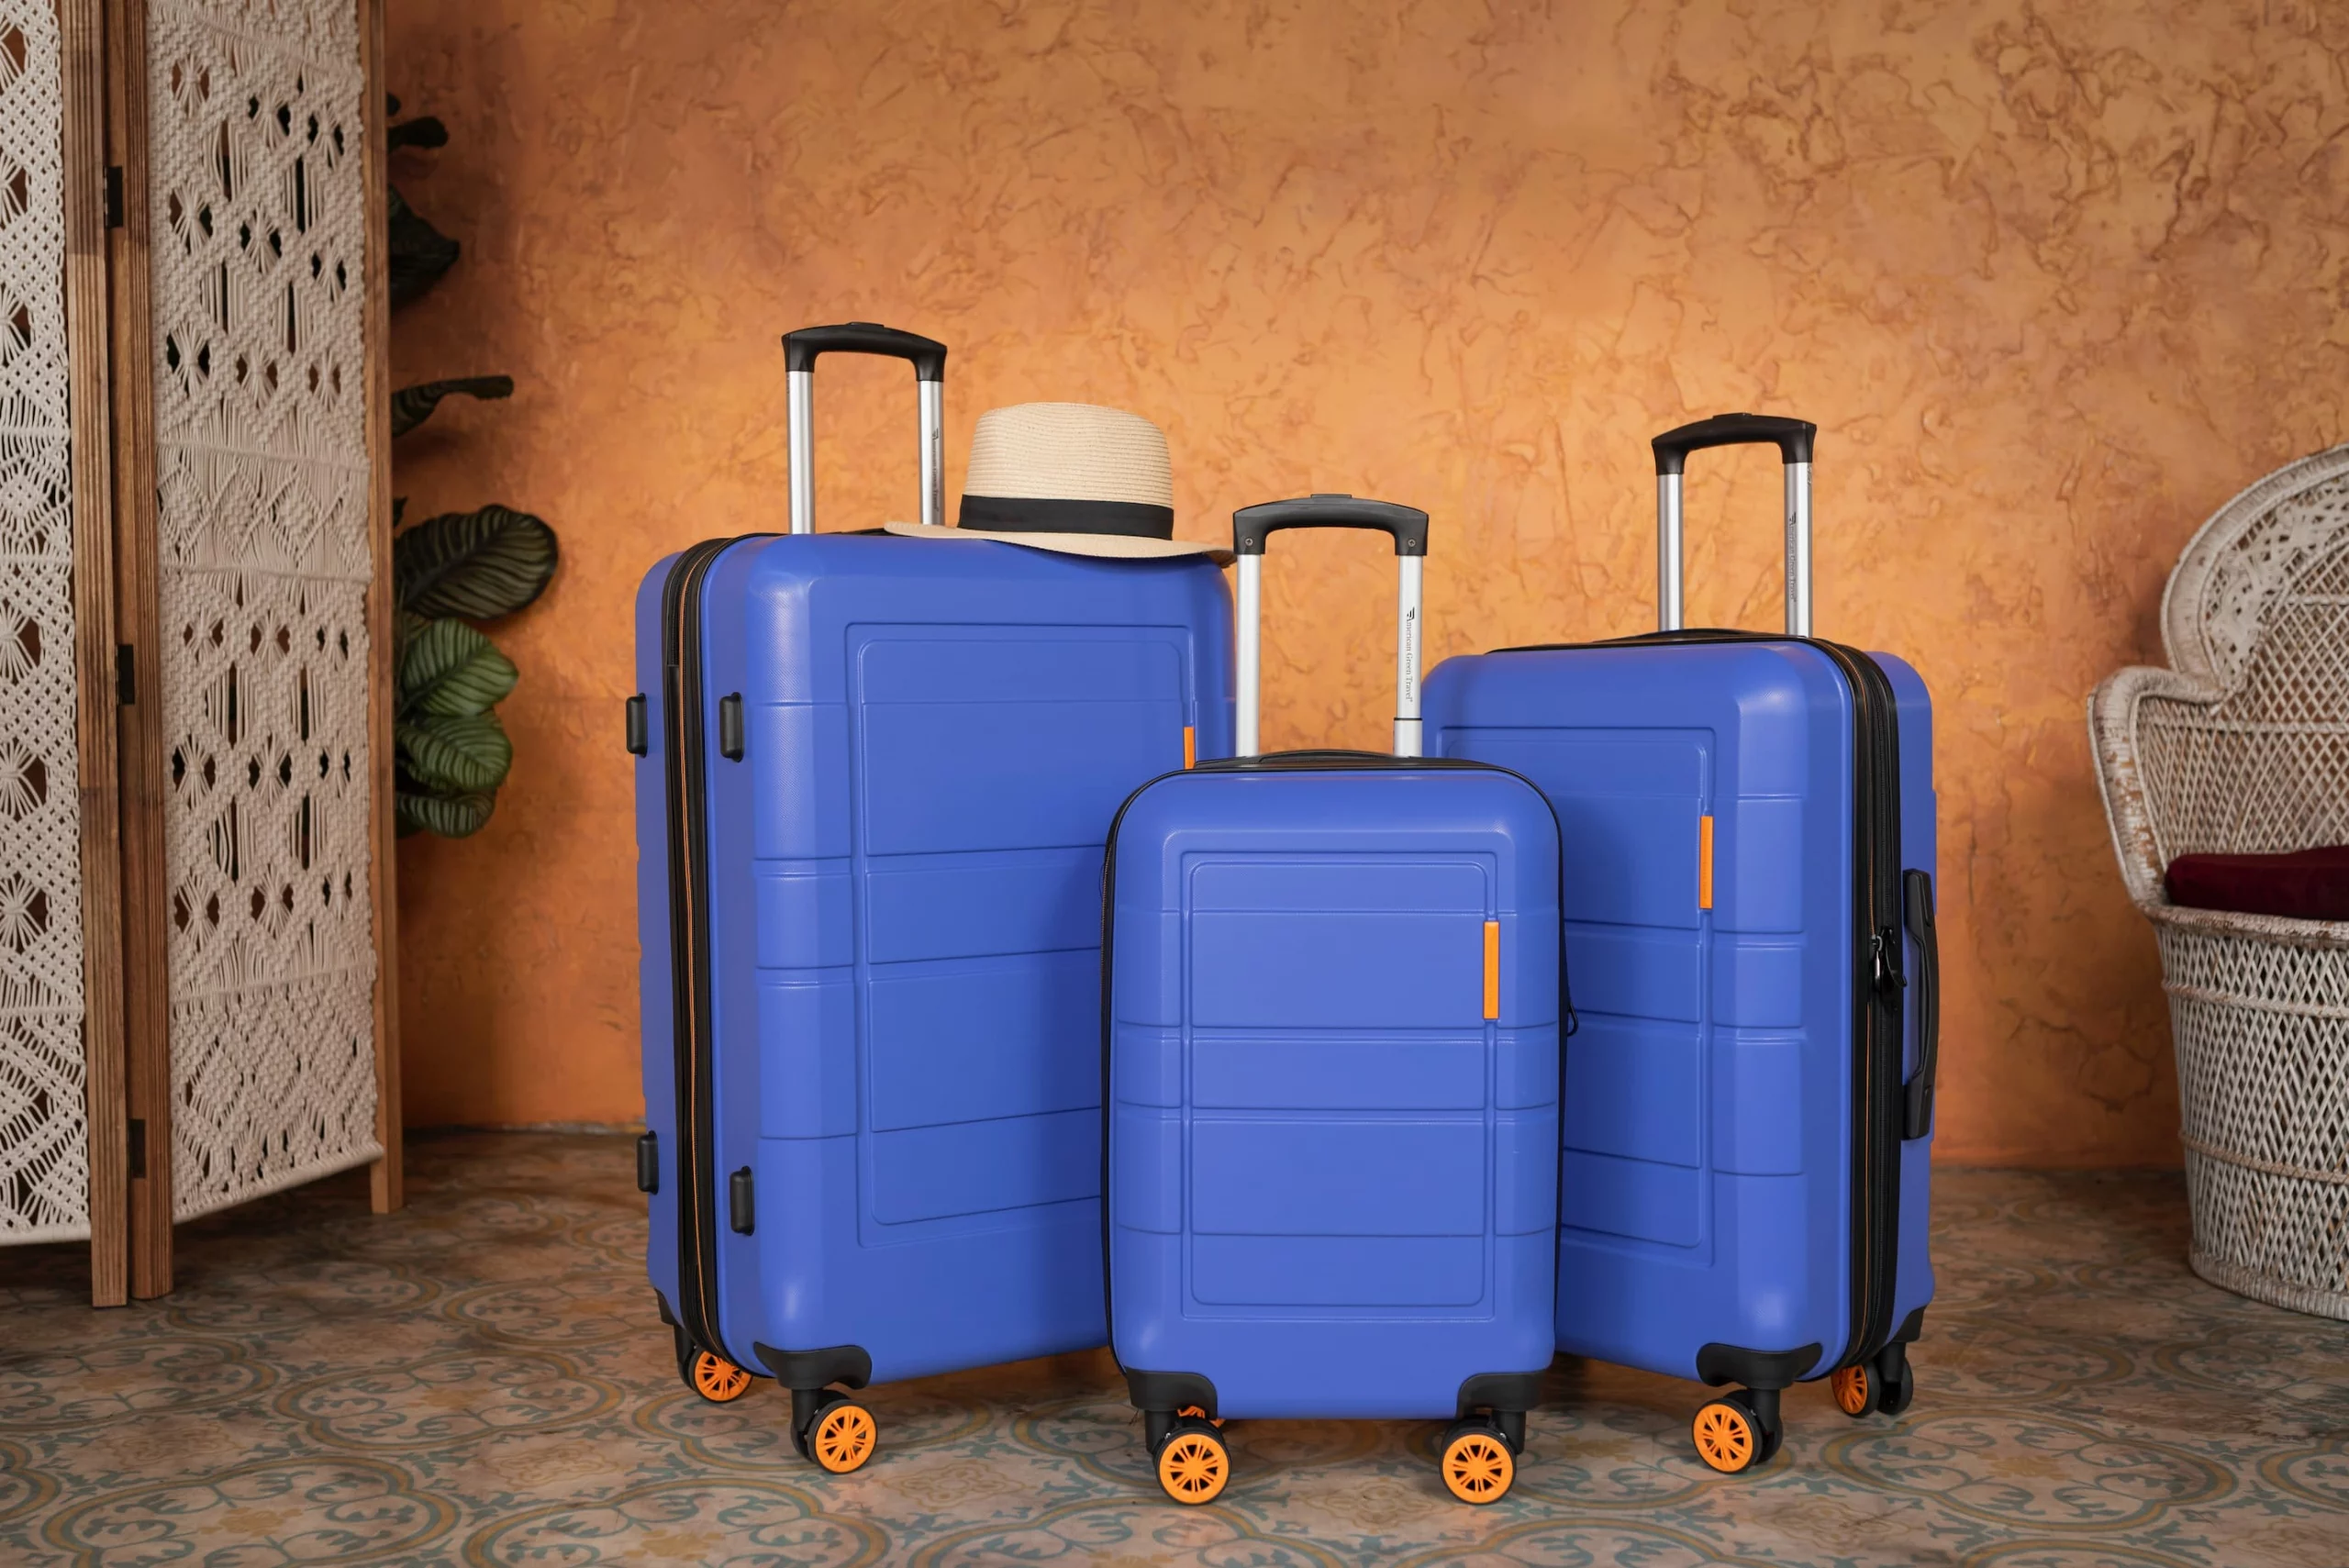 Três malas de cor azul. Imagem disponível em Unsplash.